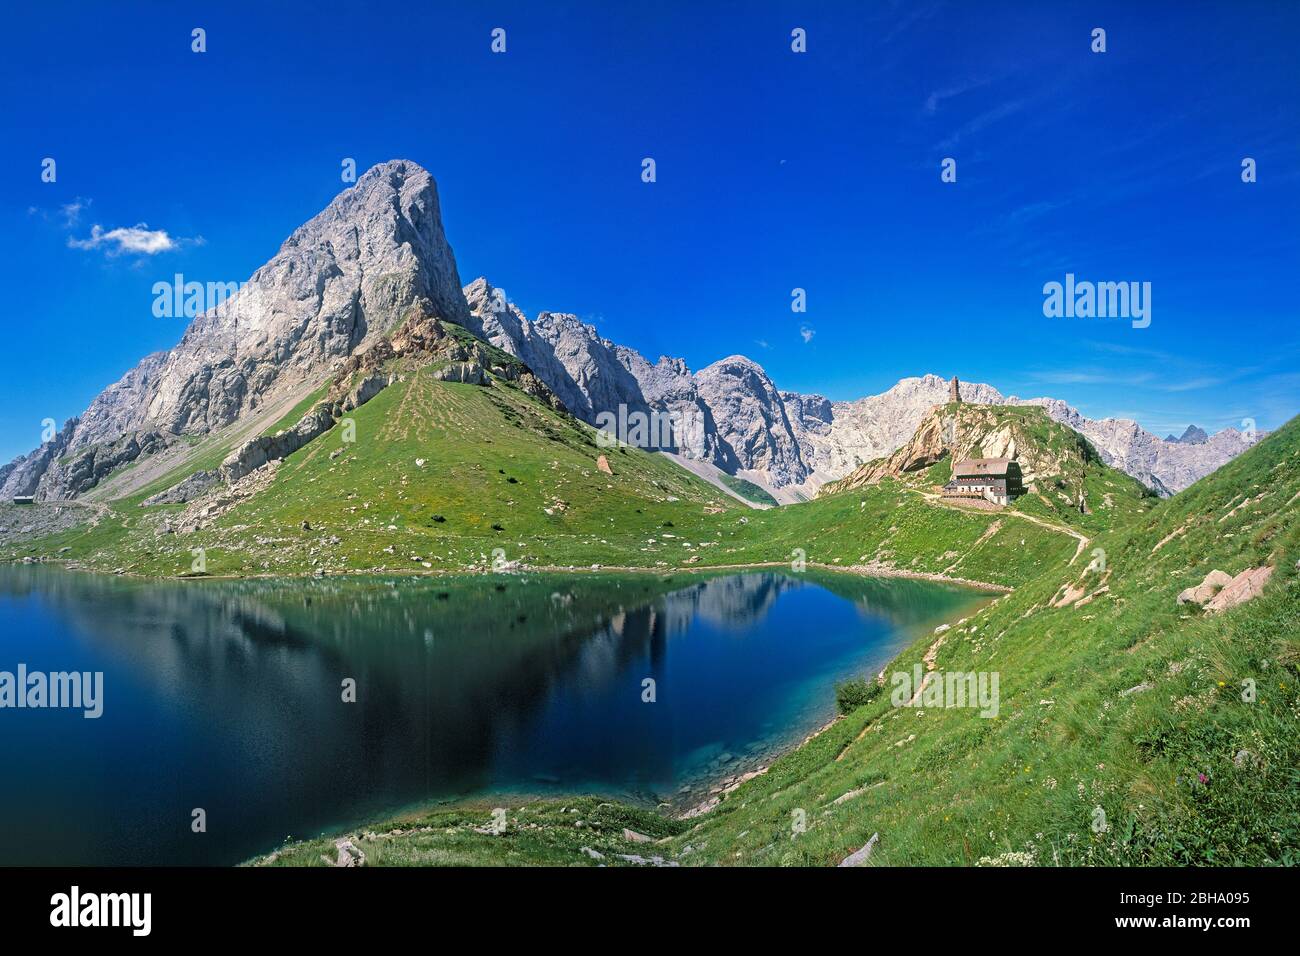 Alpi Carniche con la montagna Seekopf, il lago Wolayer e la capanna del lago Wolayer (Wolayerseehütte), cielo blu, Carinzia, Austria (località alpina della guerra della prima guerra mondiale) Foto Stock